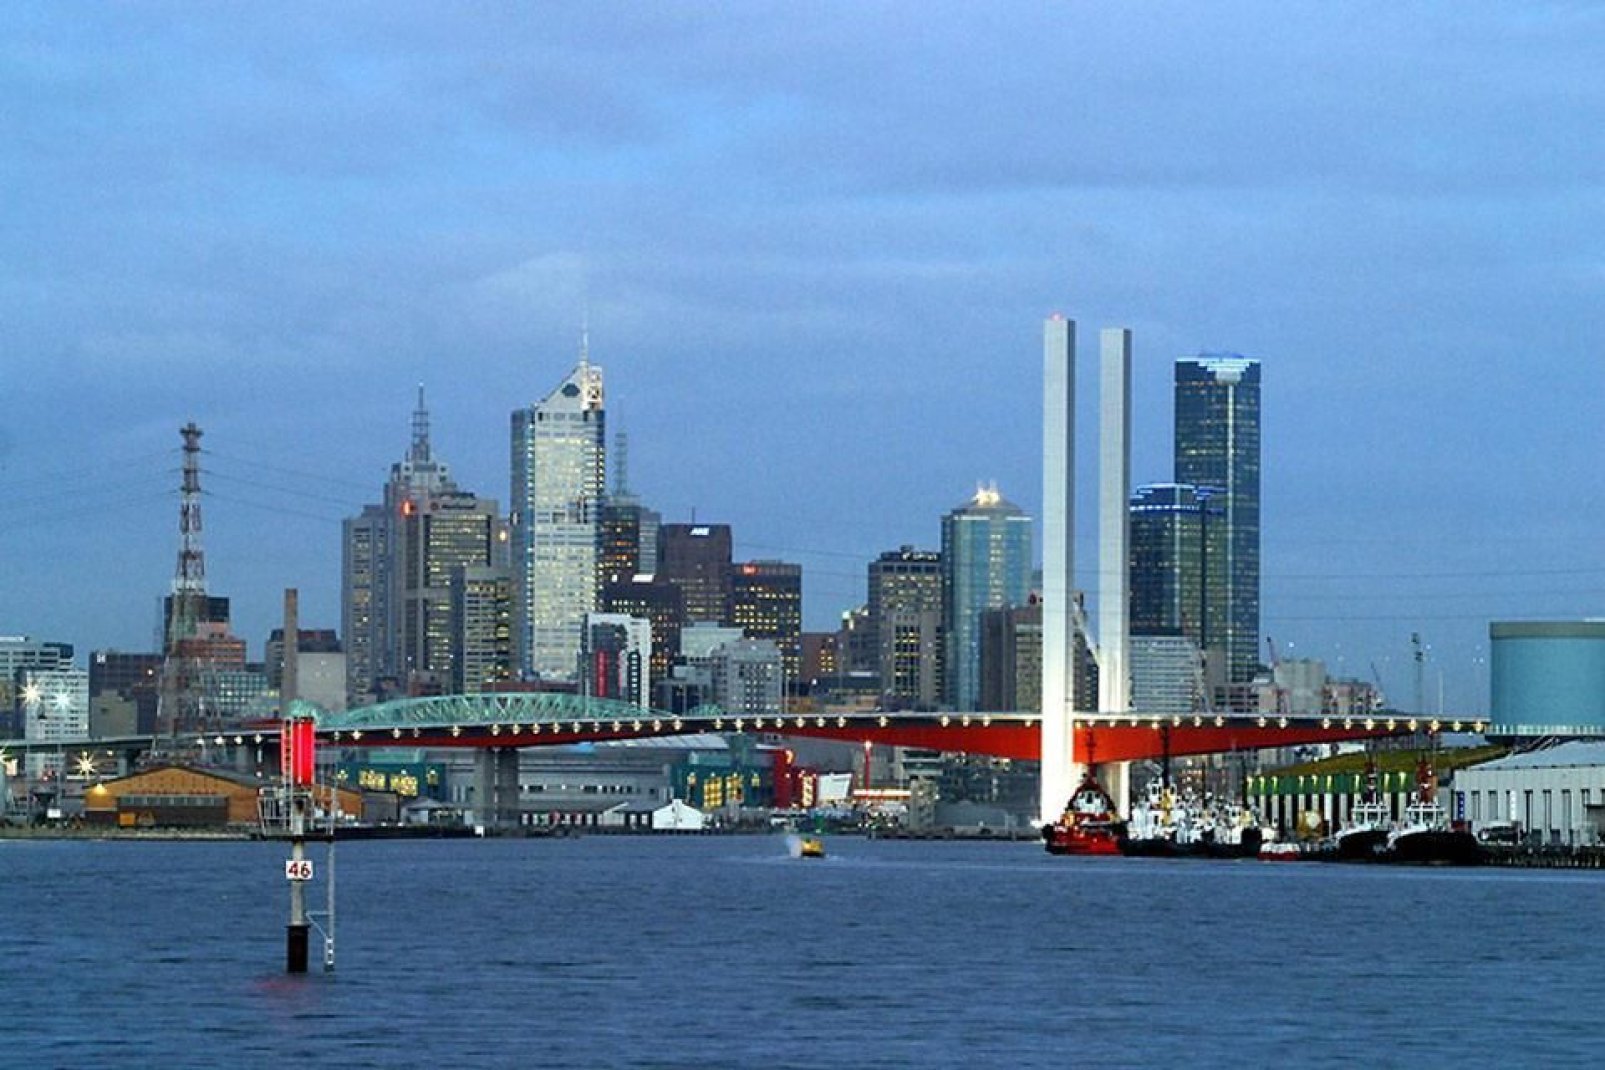 Melbourne gilt allgemein als Sporthauptstadt Australiens, da hier zahlreiche Kultur- und Sportveranstaltungen stattfinden.